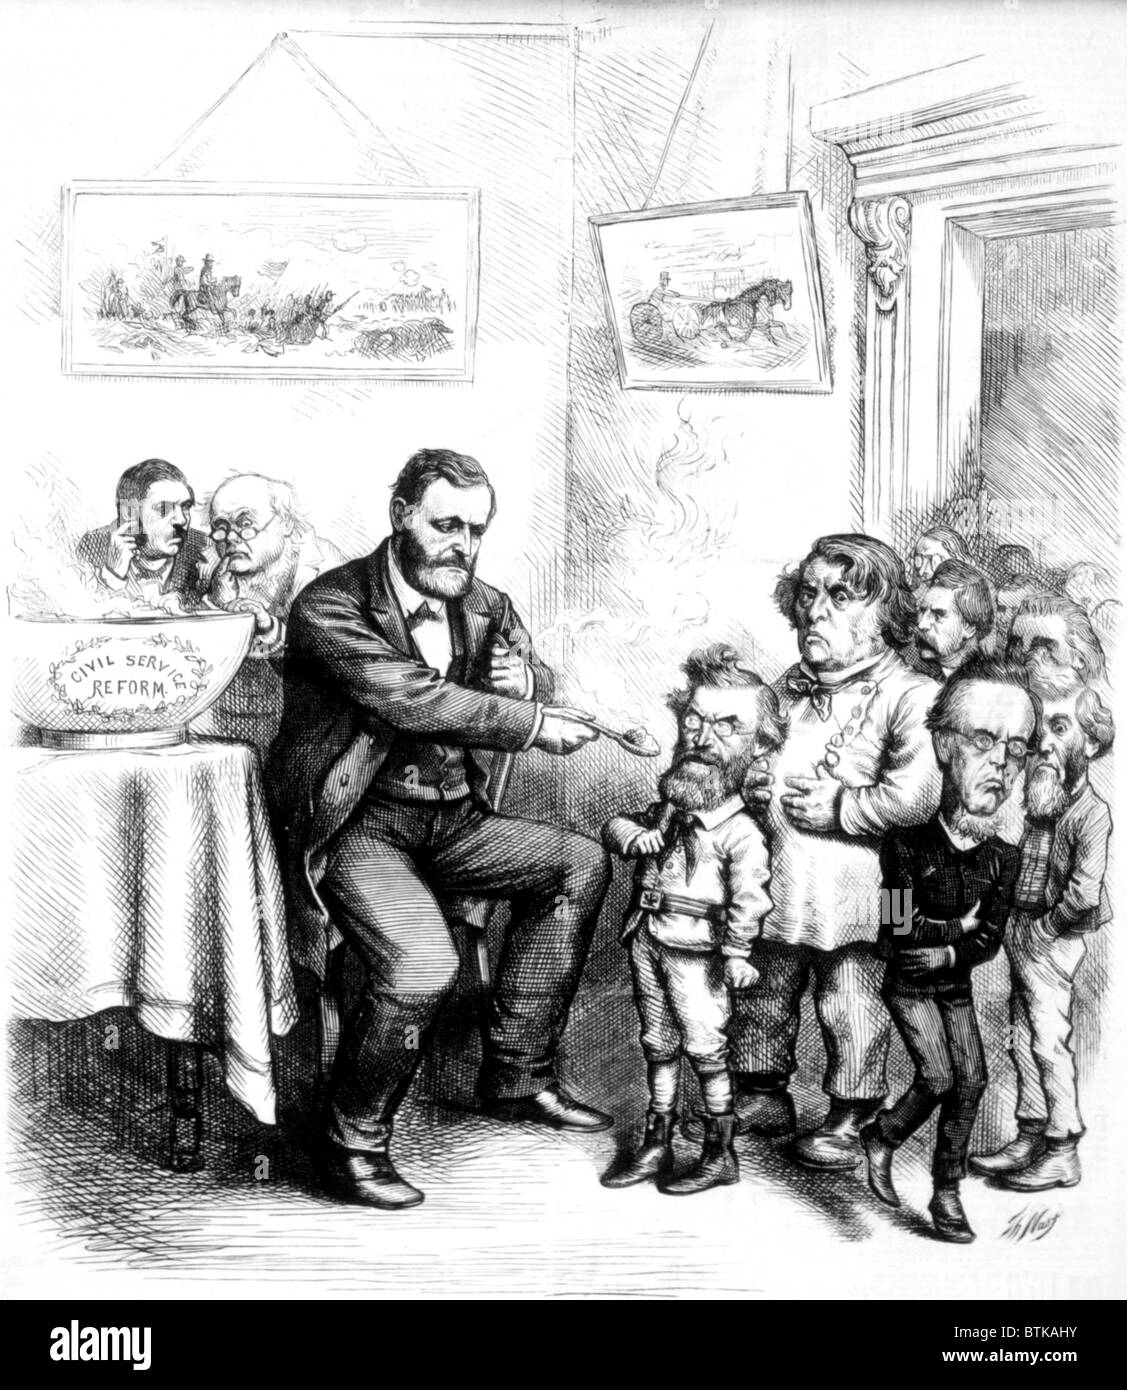 Thomas Nast politische Karikatur von Präsident Ulysses S. Grant Verzicht auf Reform des öffentlichen Dienstes nur ungern Politiker aus Harpers Weekly, 1872 Stockfoto